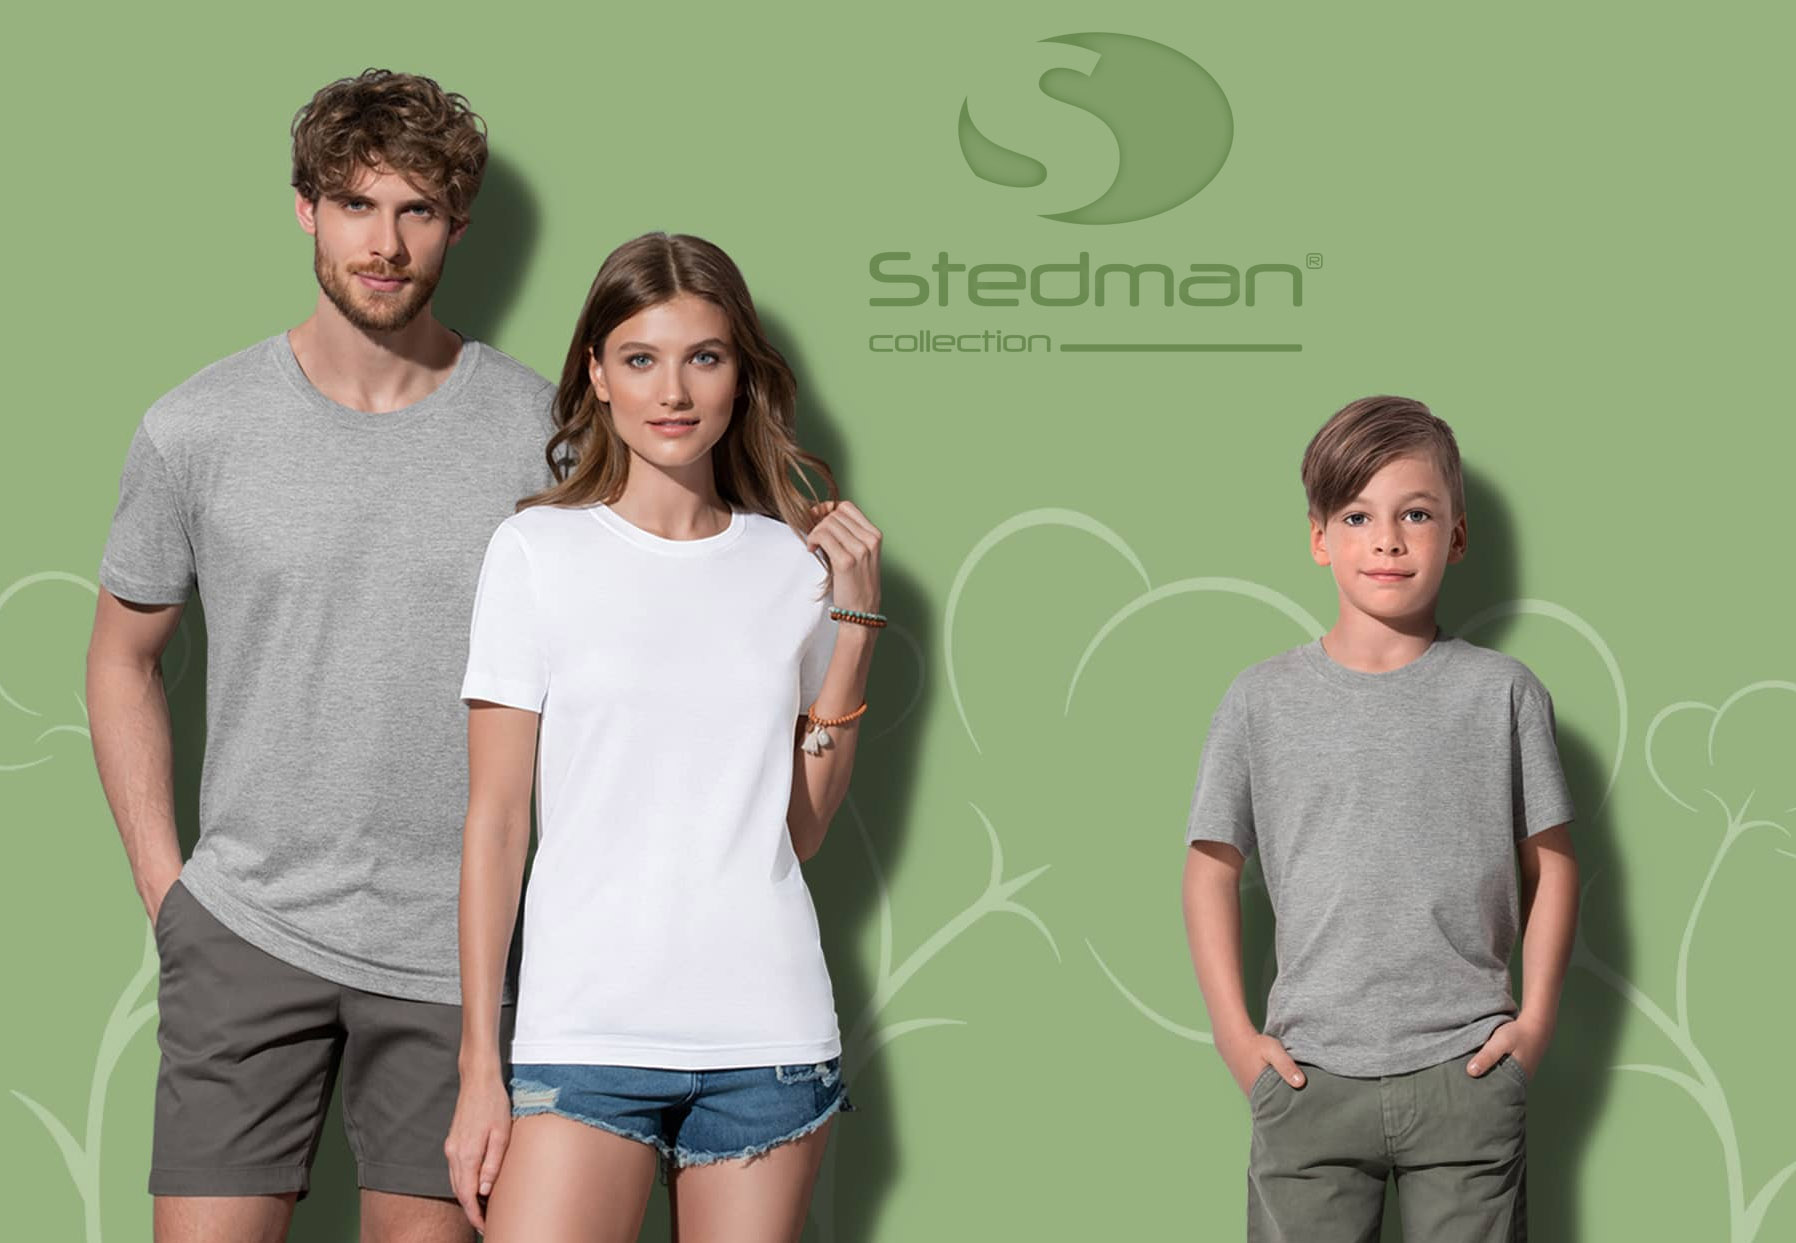 Stedman - marka tworząca koszulki z ekologicznych materiałów